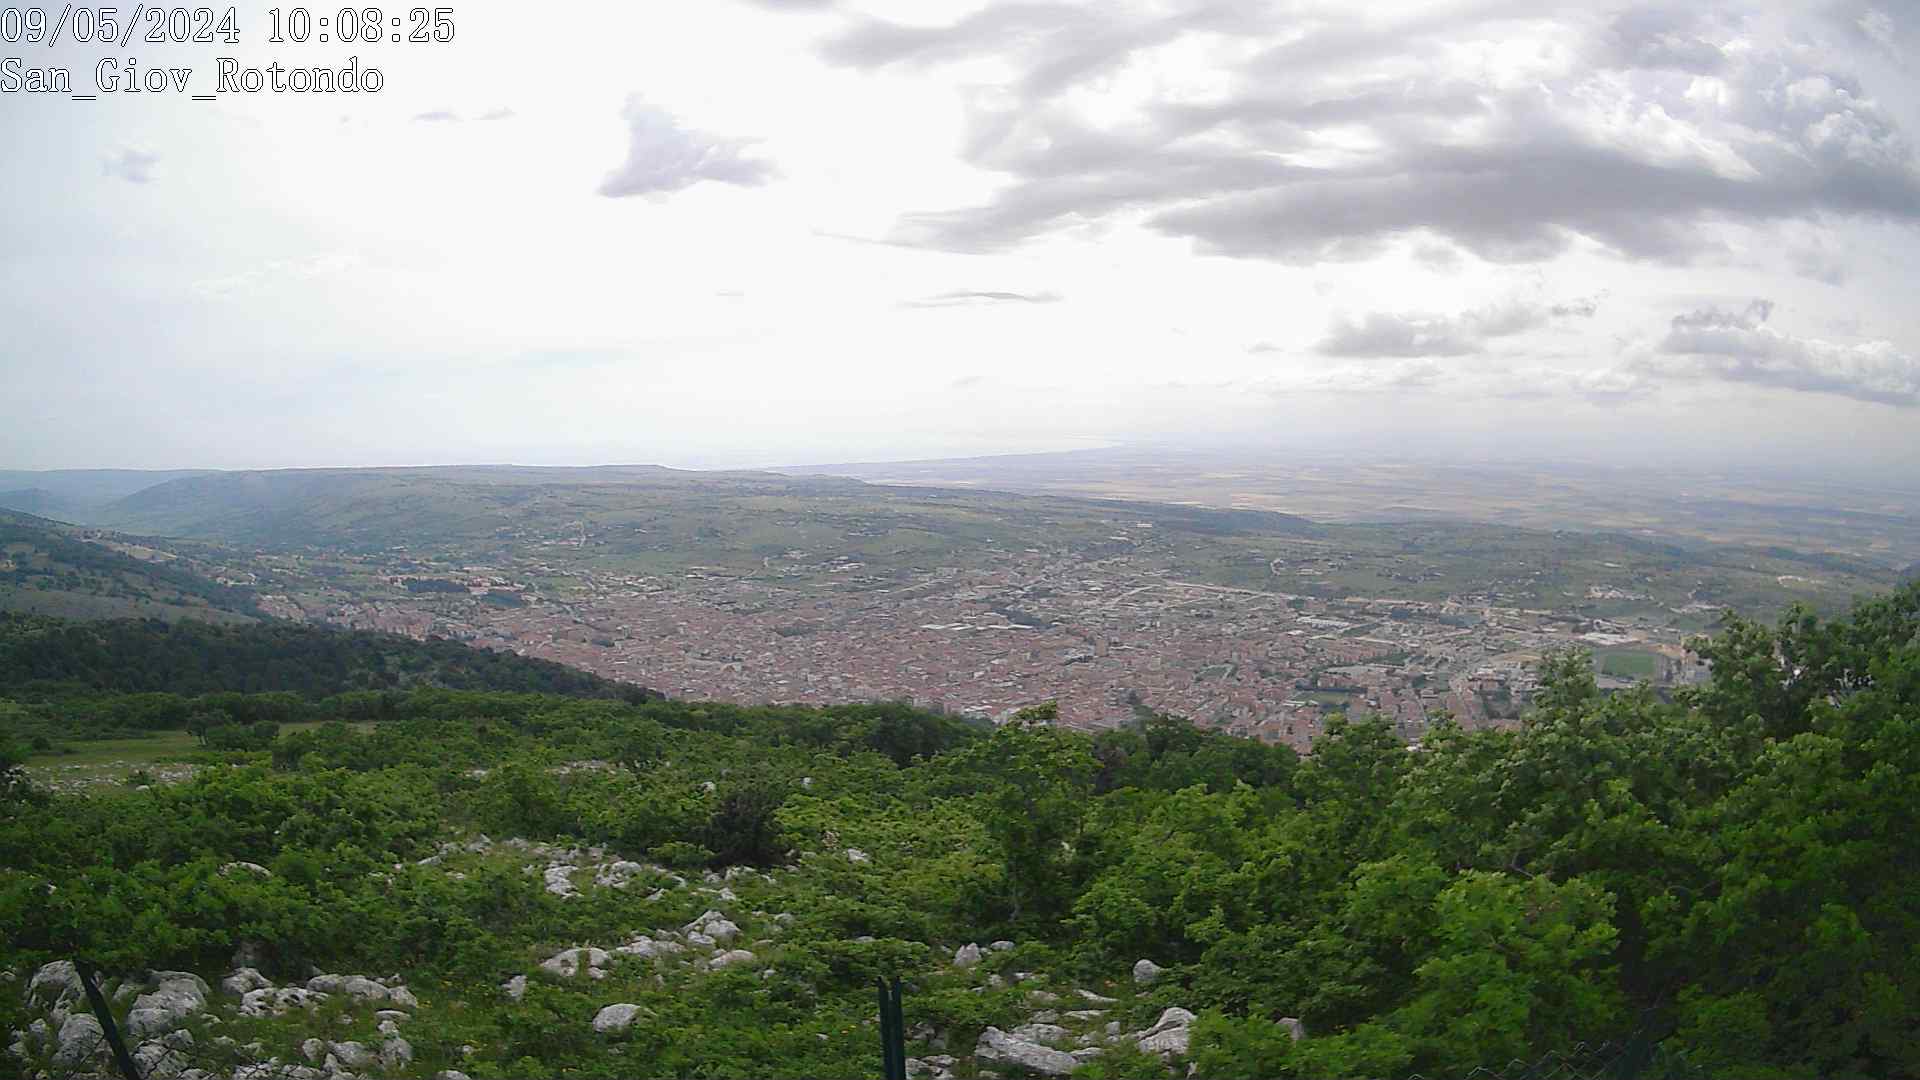 Webcam San Giovanni Rotondo am Monte Castellana im Gargano - Apulien mit Blickrichtung Süd-Südost nach Manfredonia